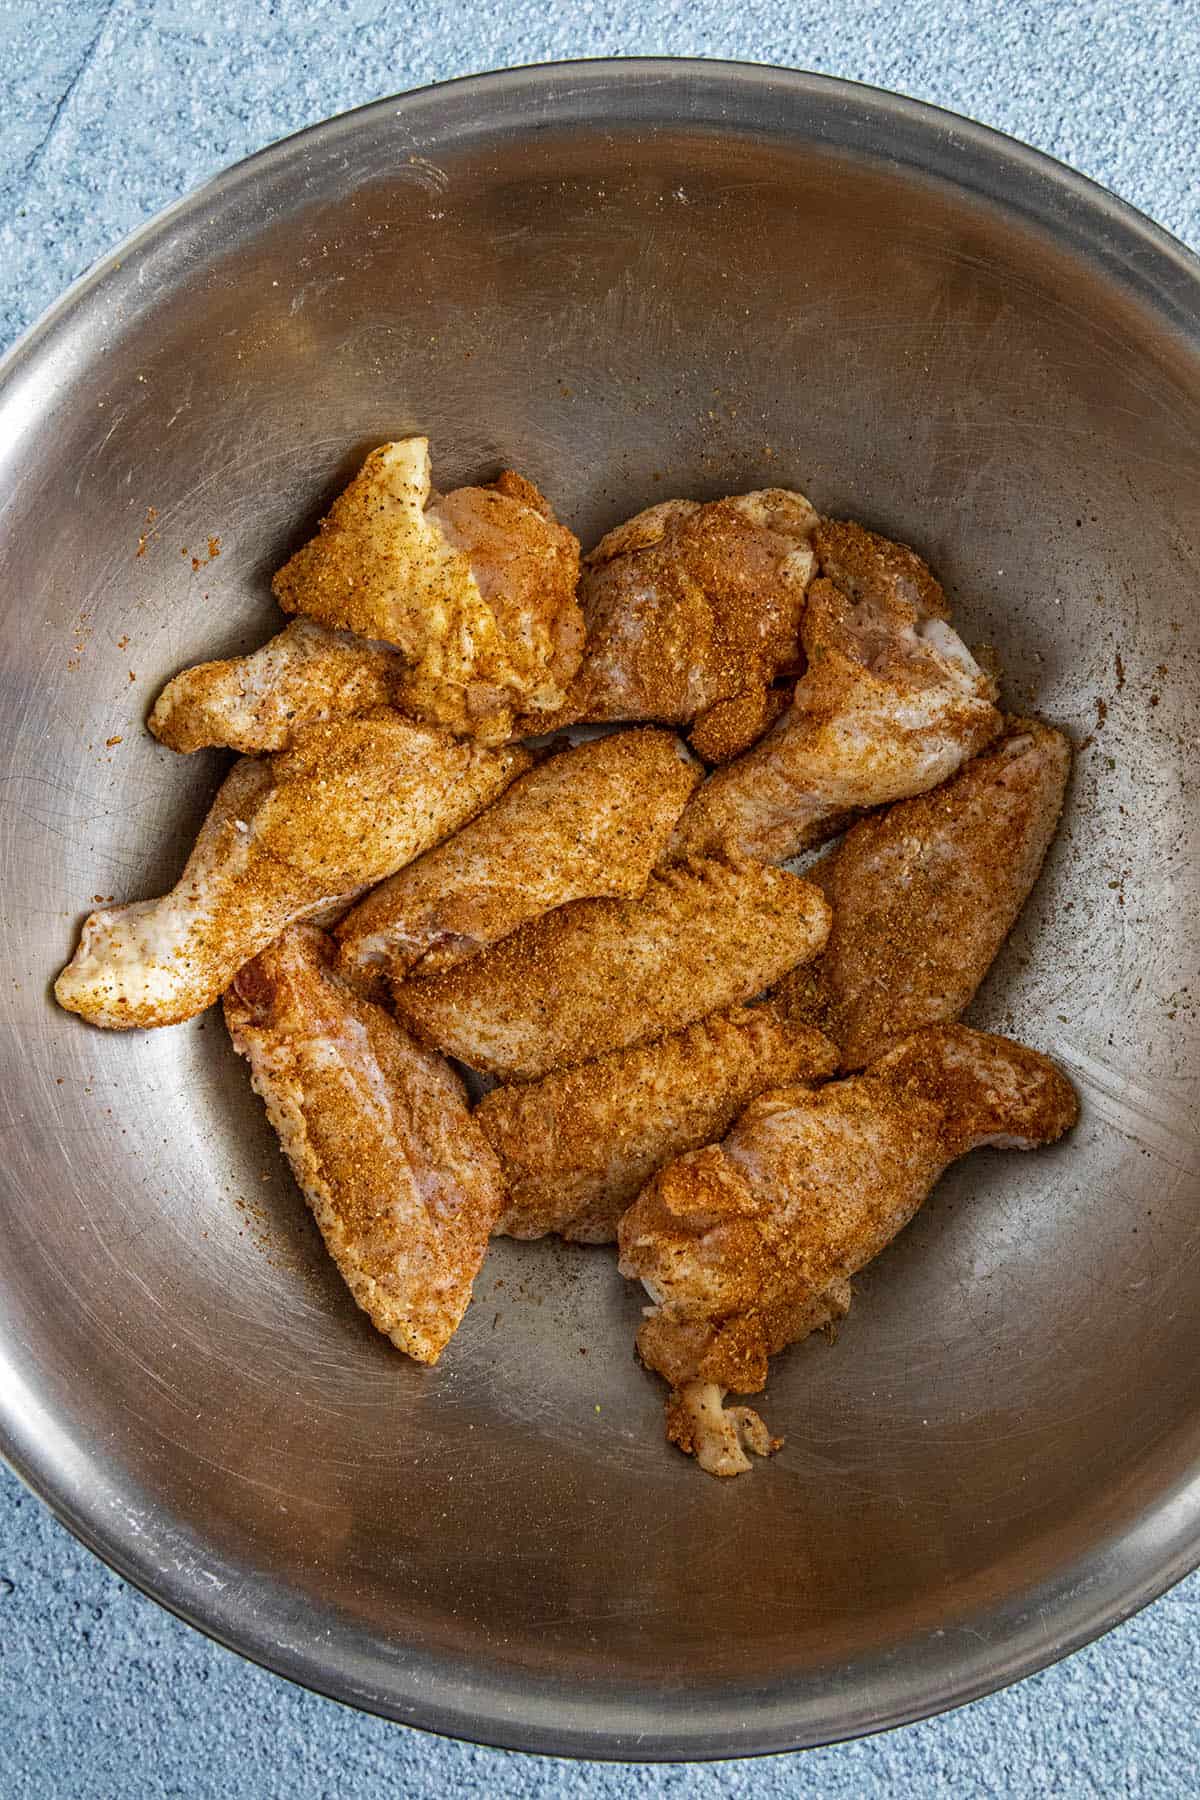 Seasoning the chicken wings